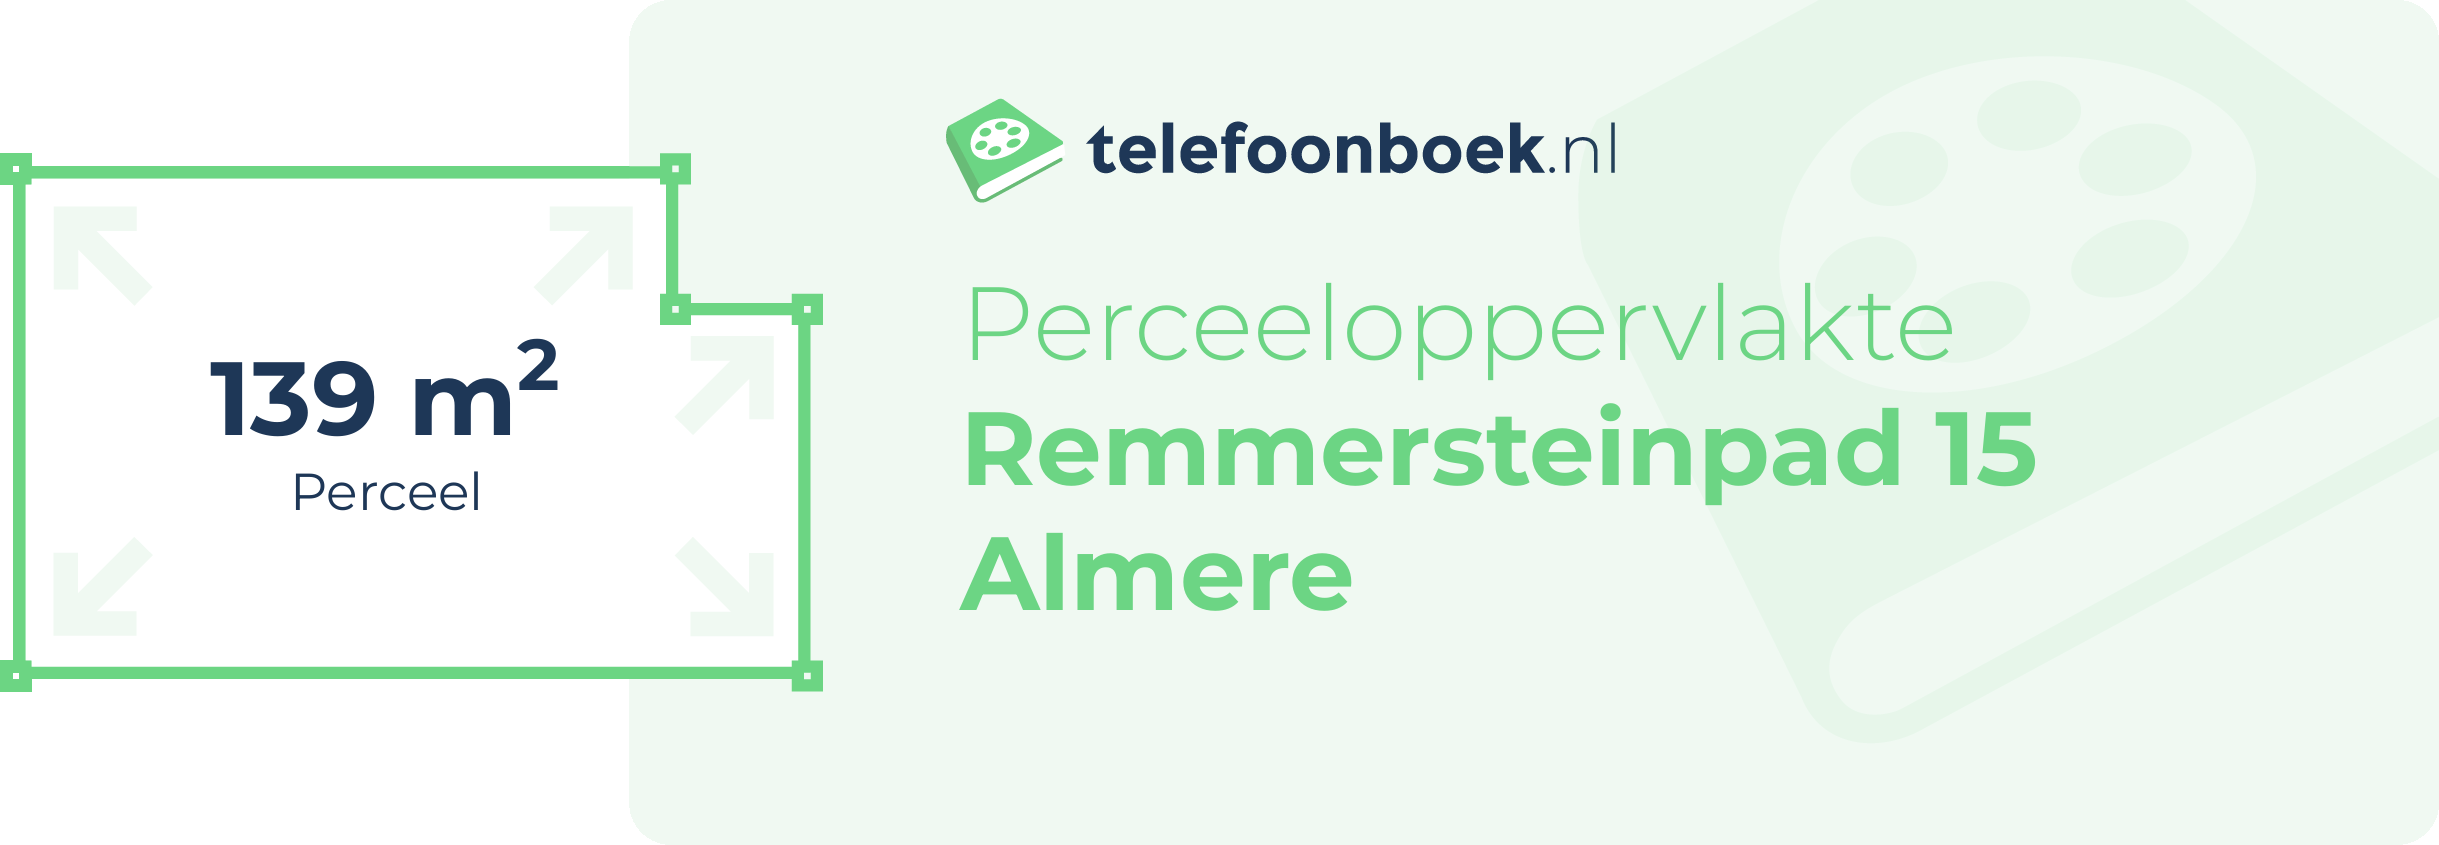 Perceeloppervlakte Remmersteinpad 15 Almere